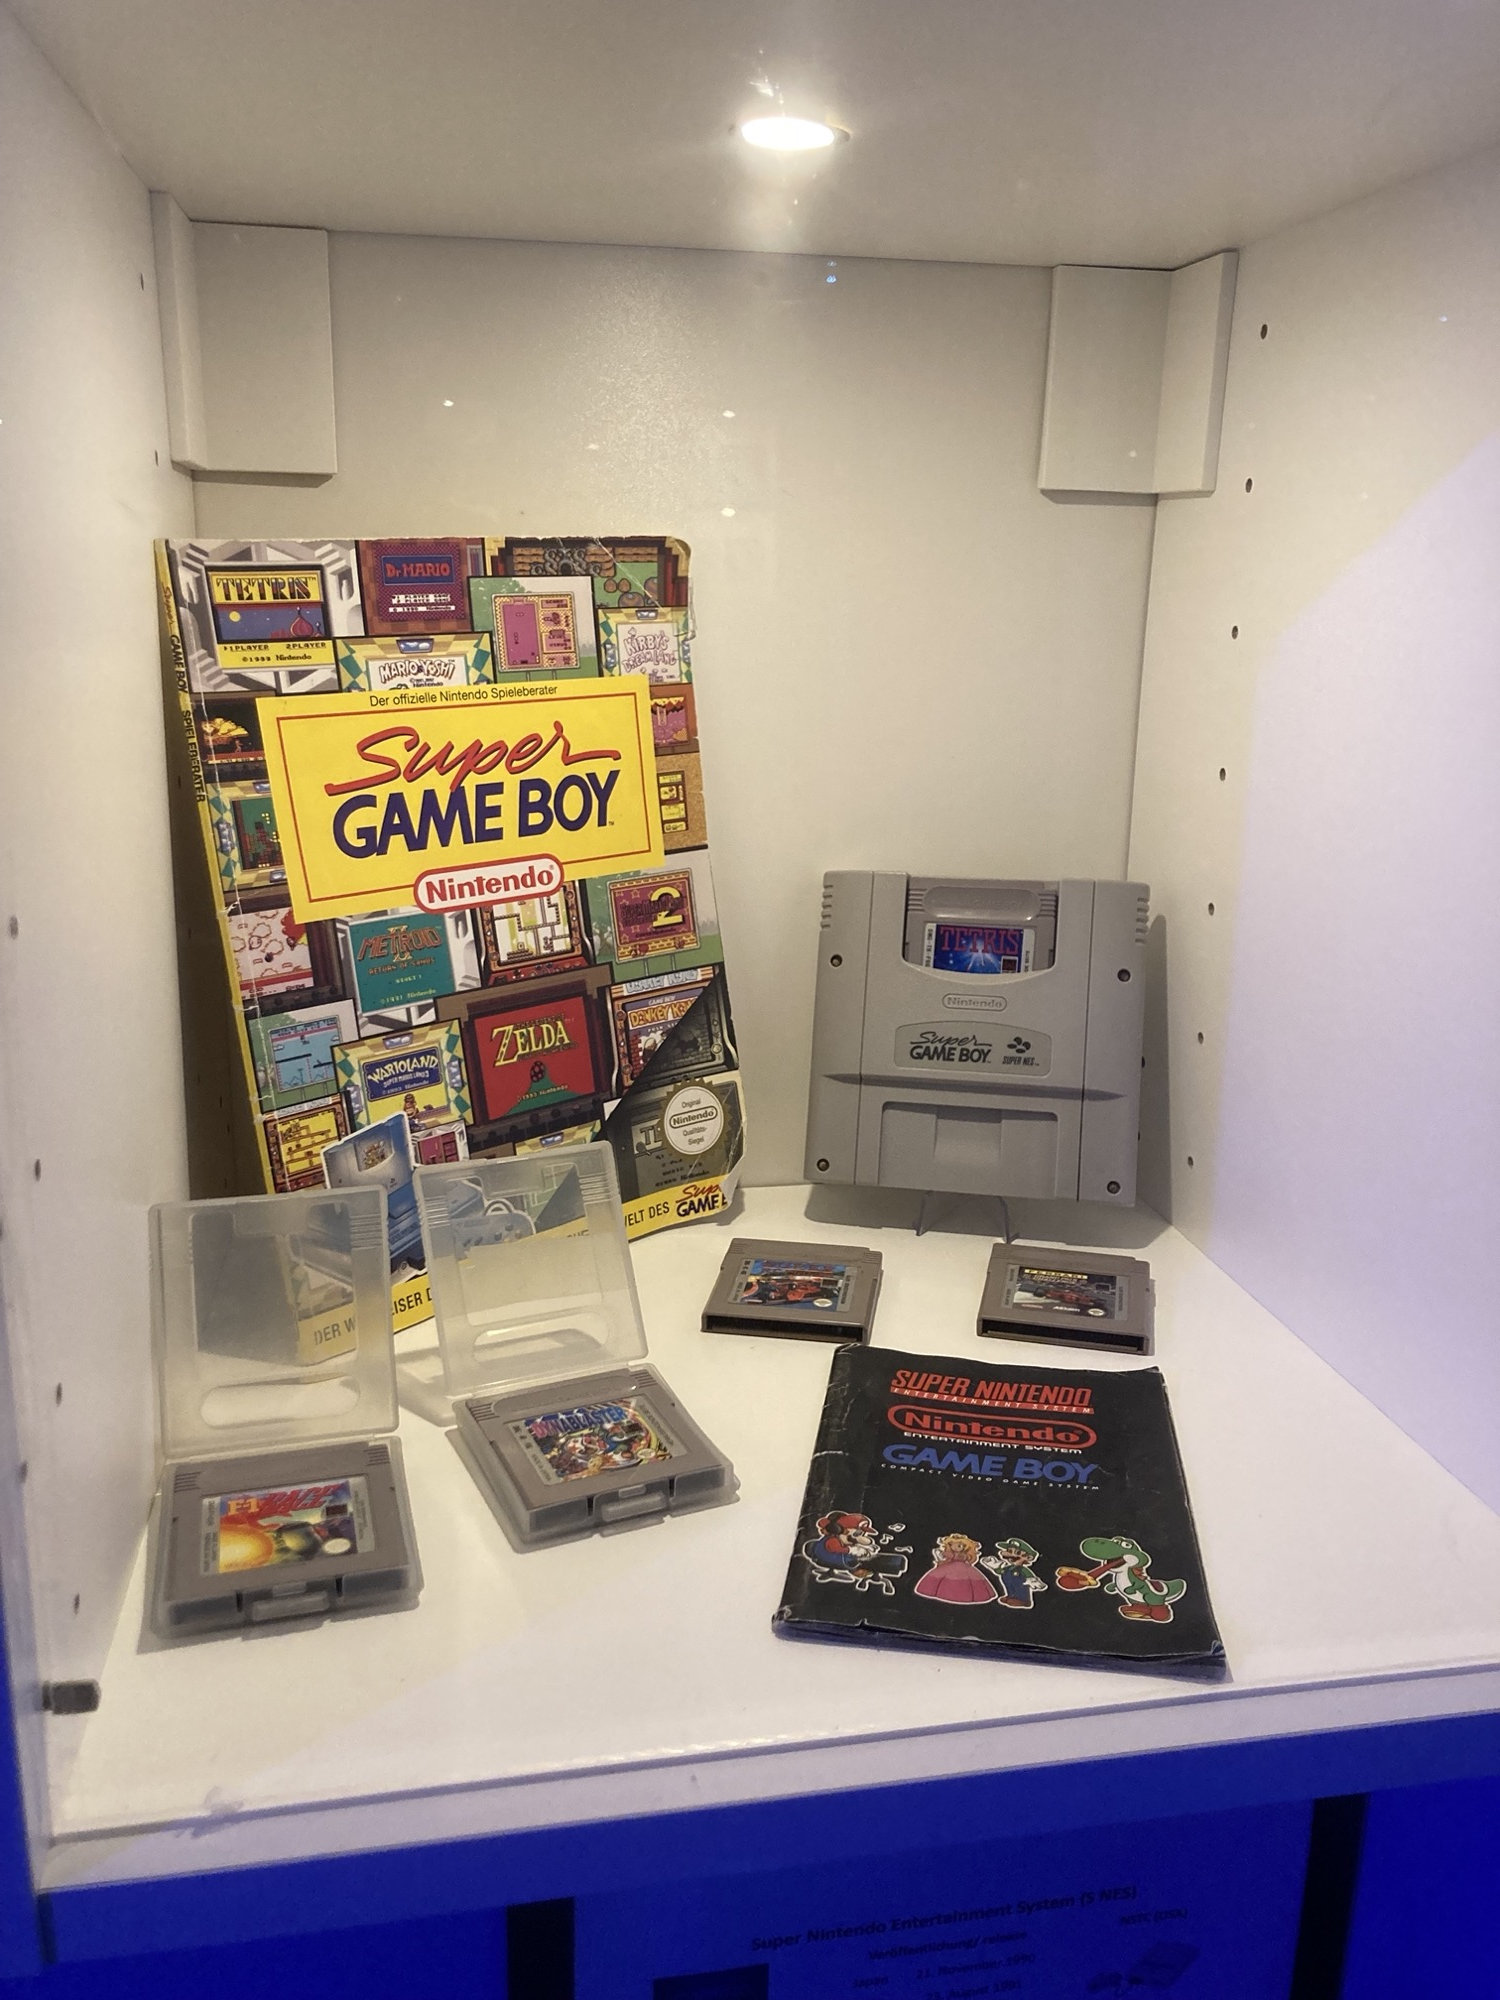 ein Display, das verschiedene Game Boy Spielekassetten zeigt, daneben die Adapterkassette, die es erlaubt Game Boy Spiele auf dem Super NES zu spielen sowie ein Lösungsheft für diverse Game Boy Spiele aus der Pre-Internet-Ära